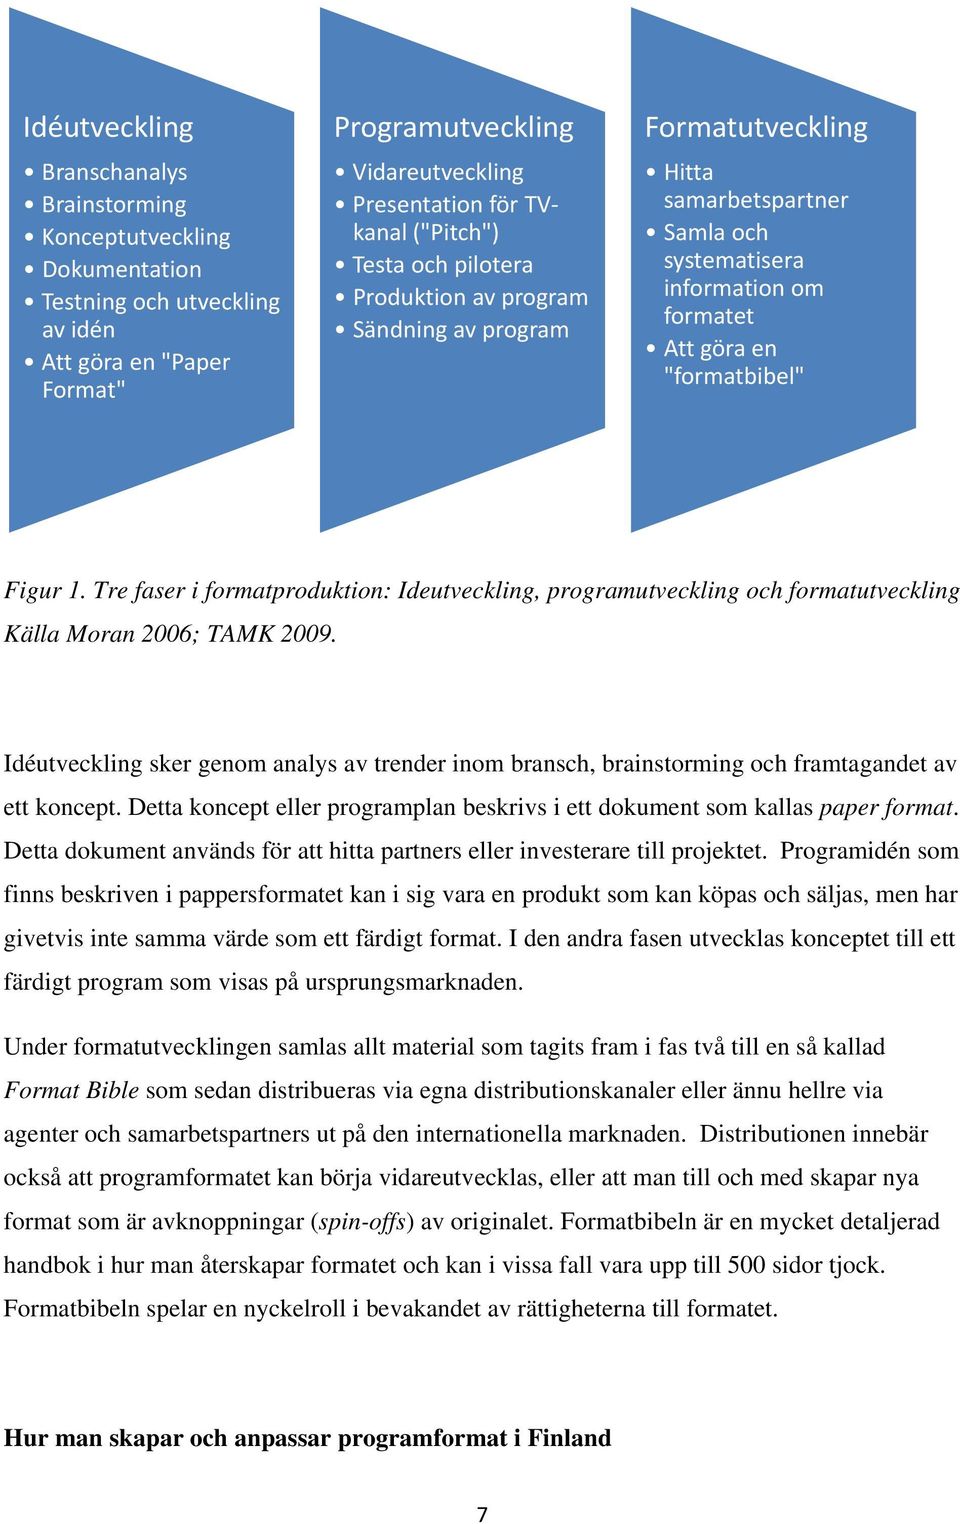 Tre faser i formatproduktion: Ideutveckling, programutveckling och formatutveckling Källa Moran 2006; TAMK 2009.